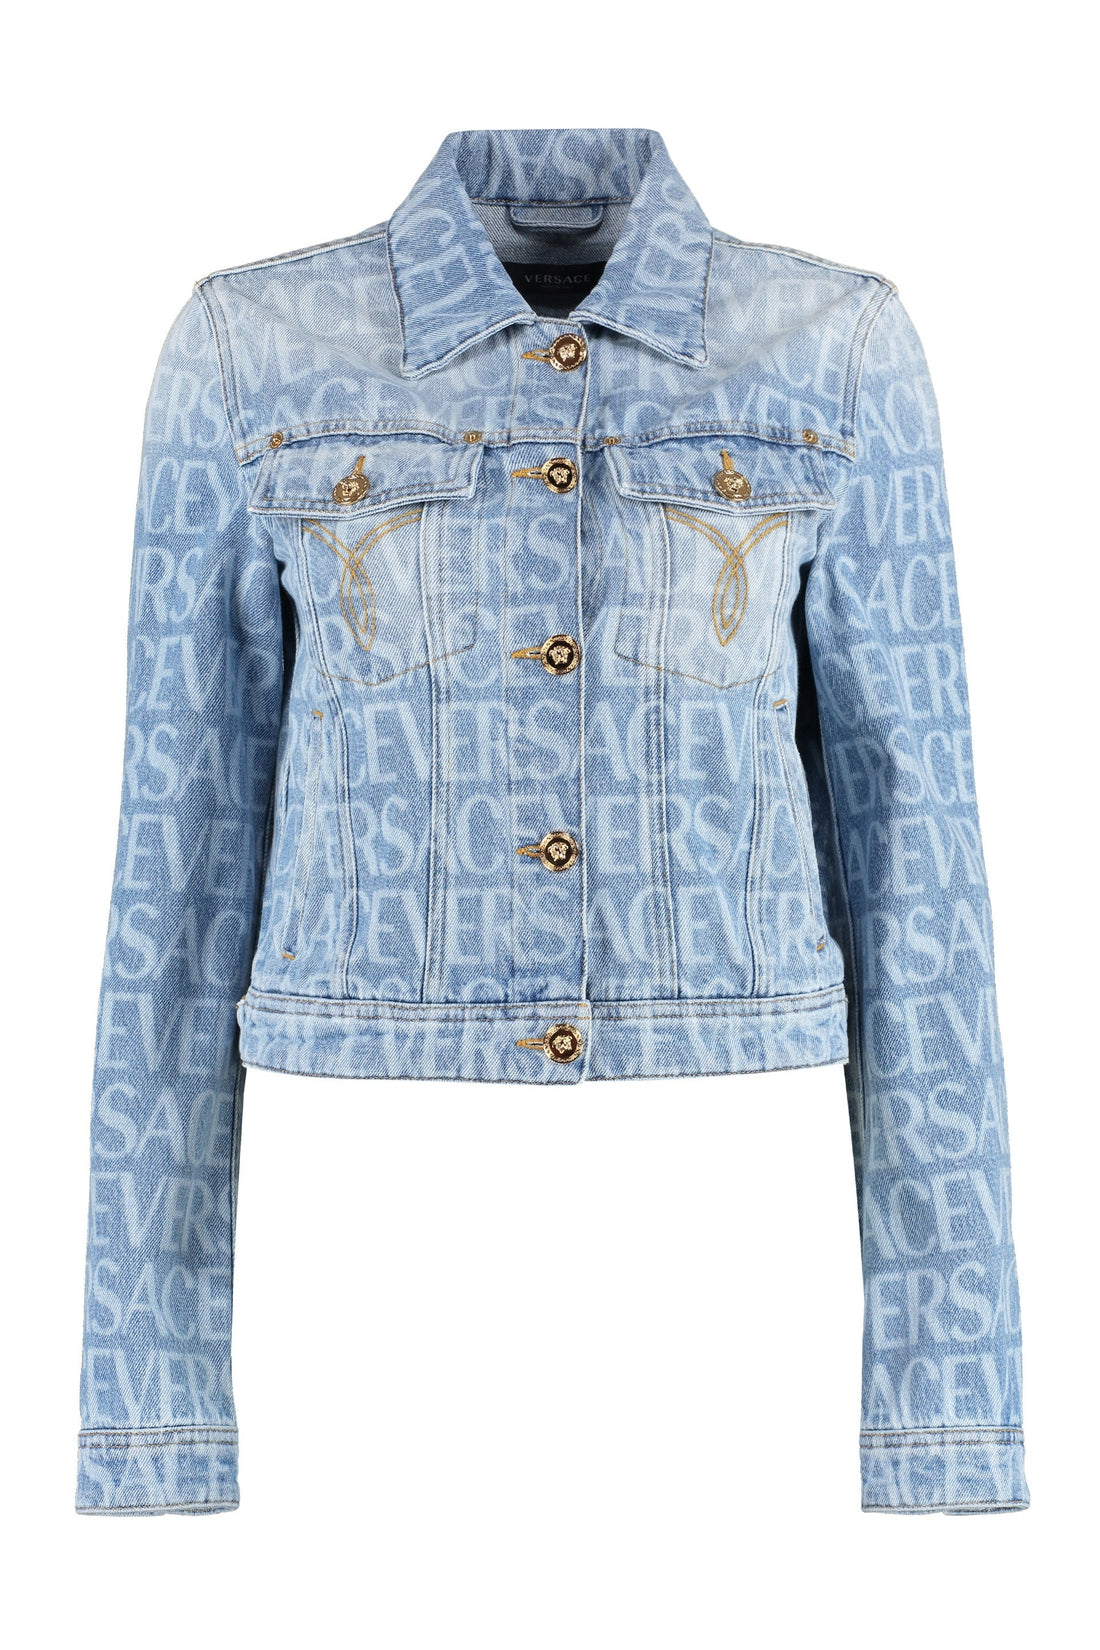 Versace-OUTLET-SALE-Denim jacket-ARCHIVIST